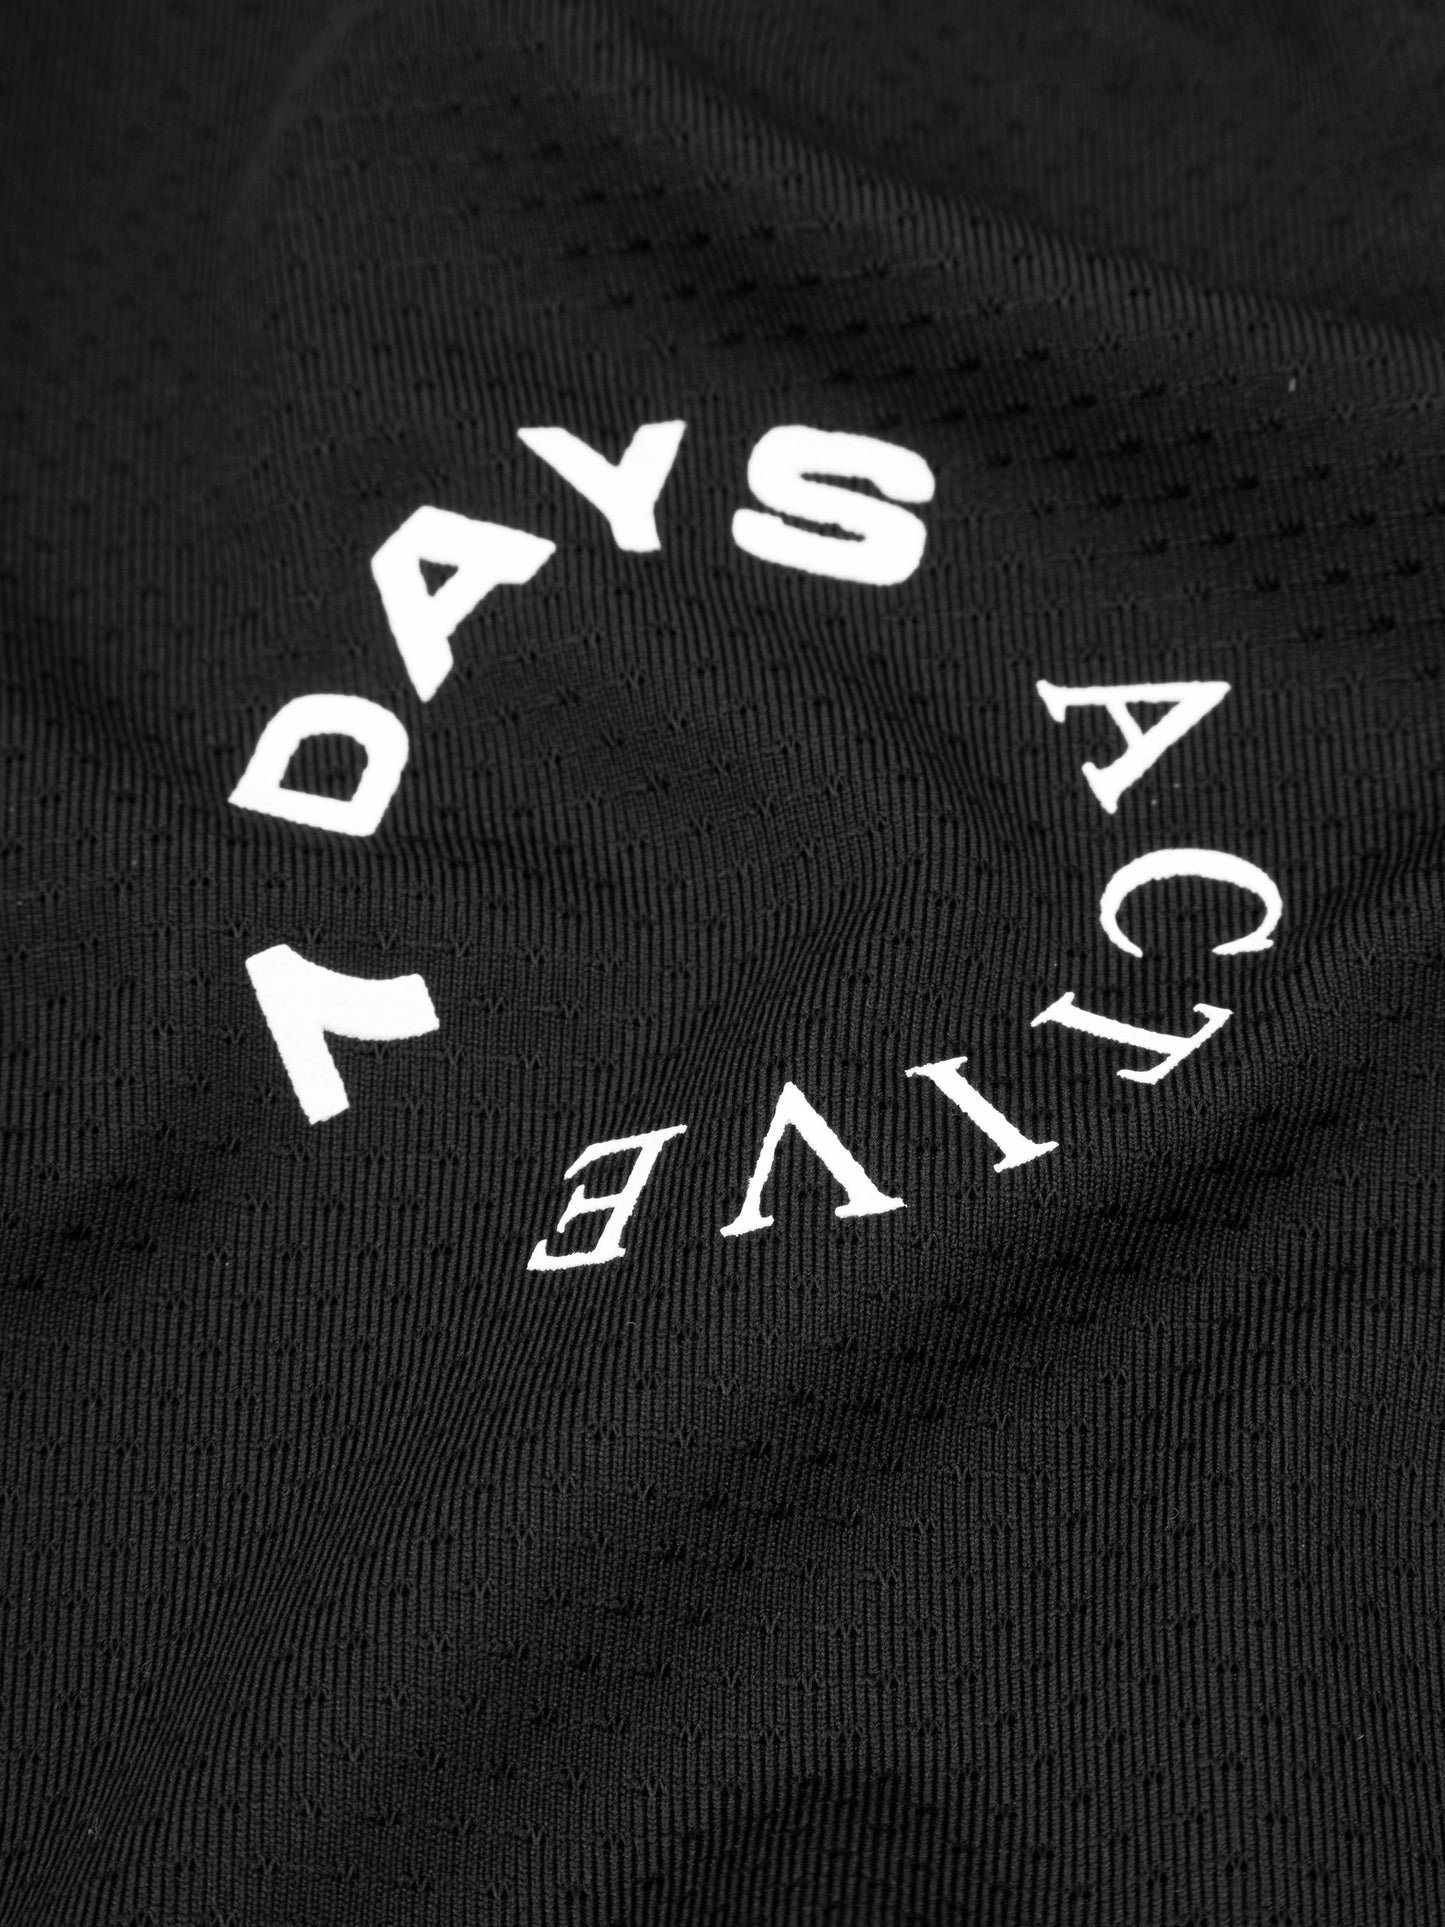 7 DAYS Women's Training Tee T-shirt S/S 001 Black